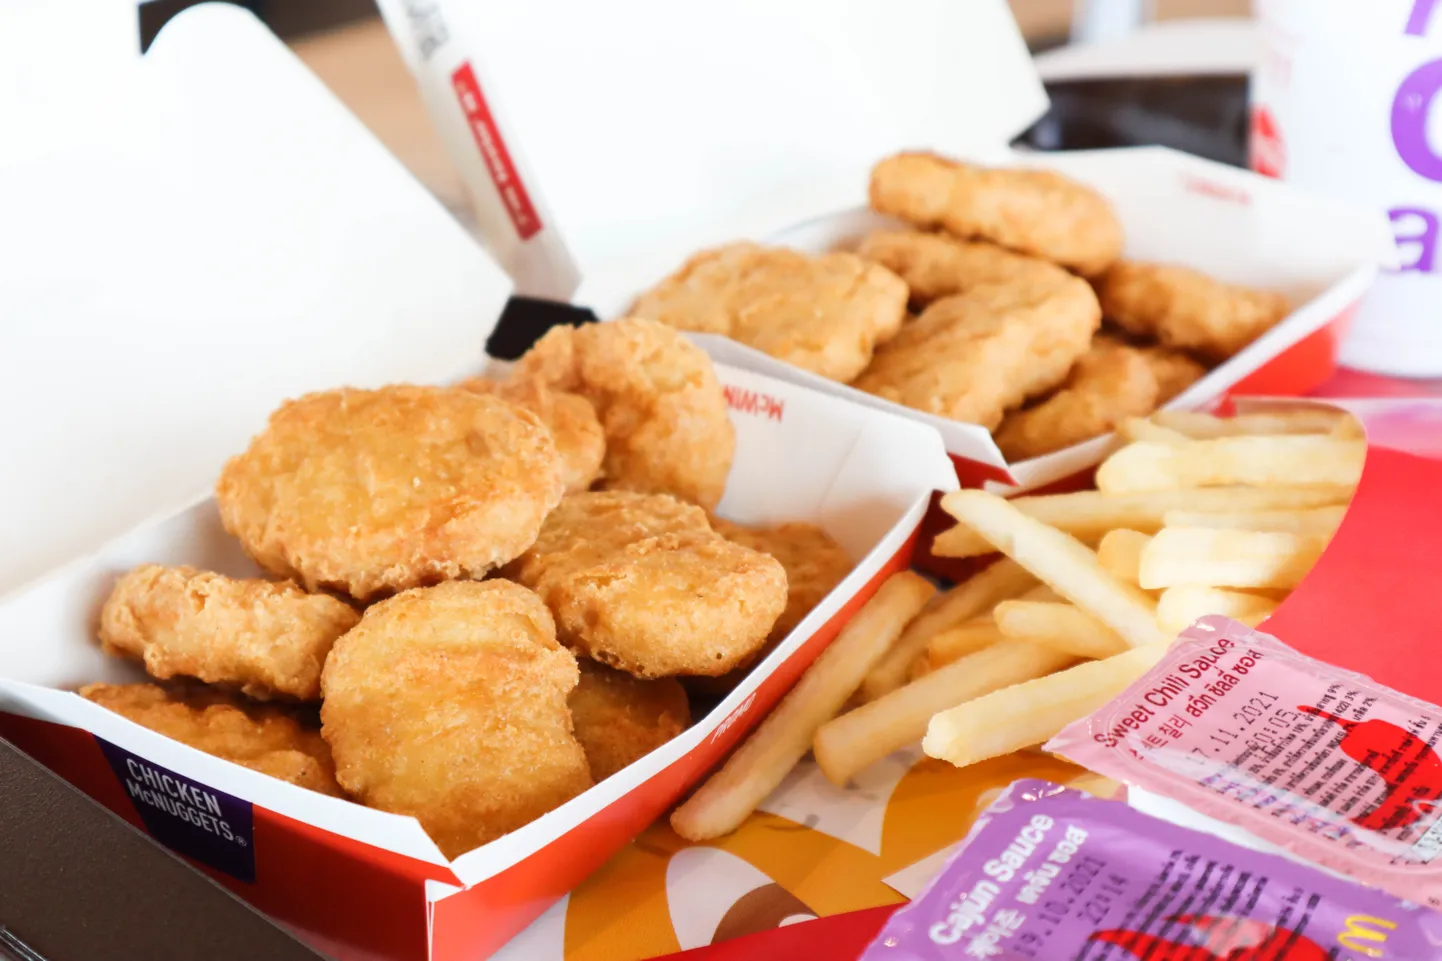 McDonaldsi kiirtoidurestorani kananagitsad ja friikartulid. Pilt on illustreeriv